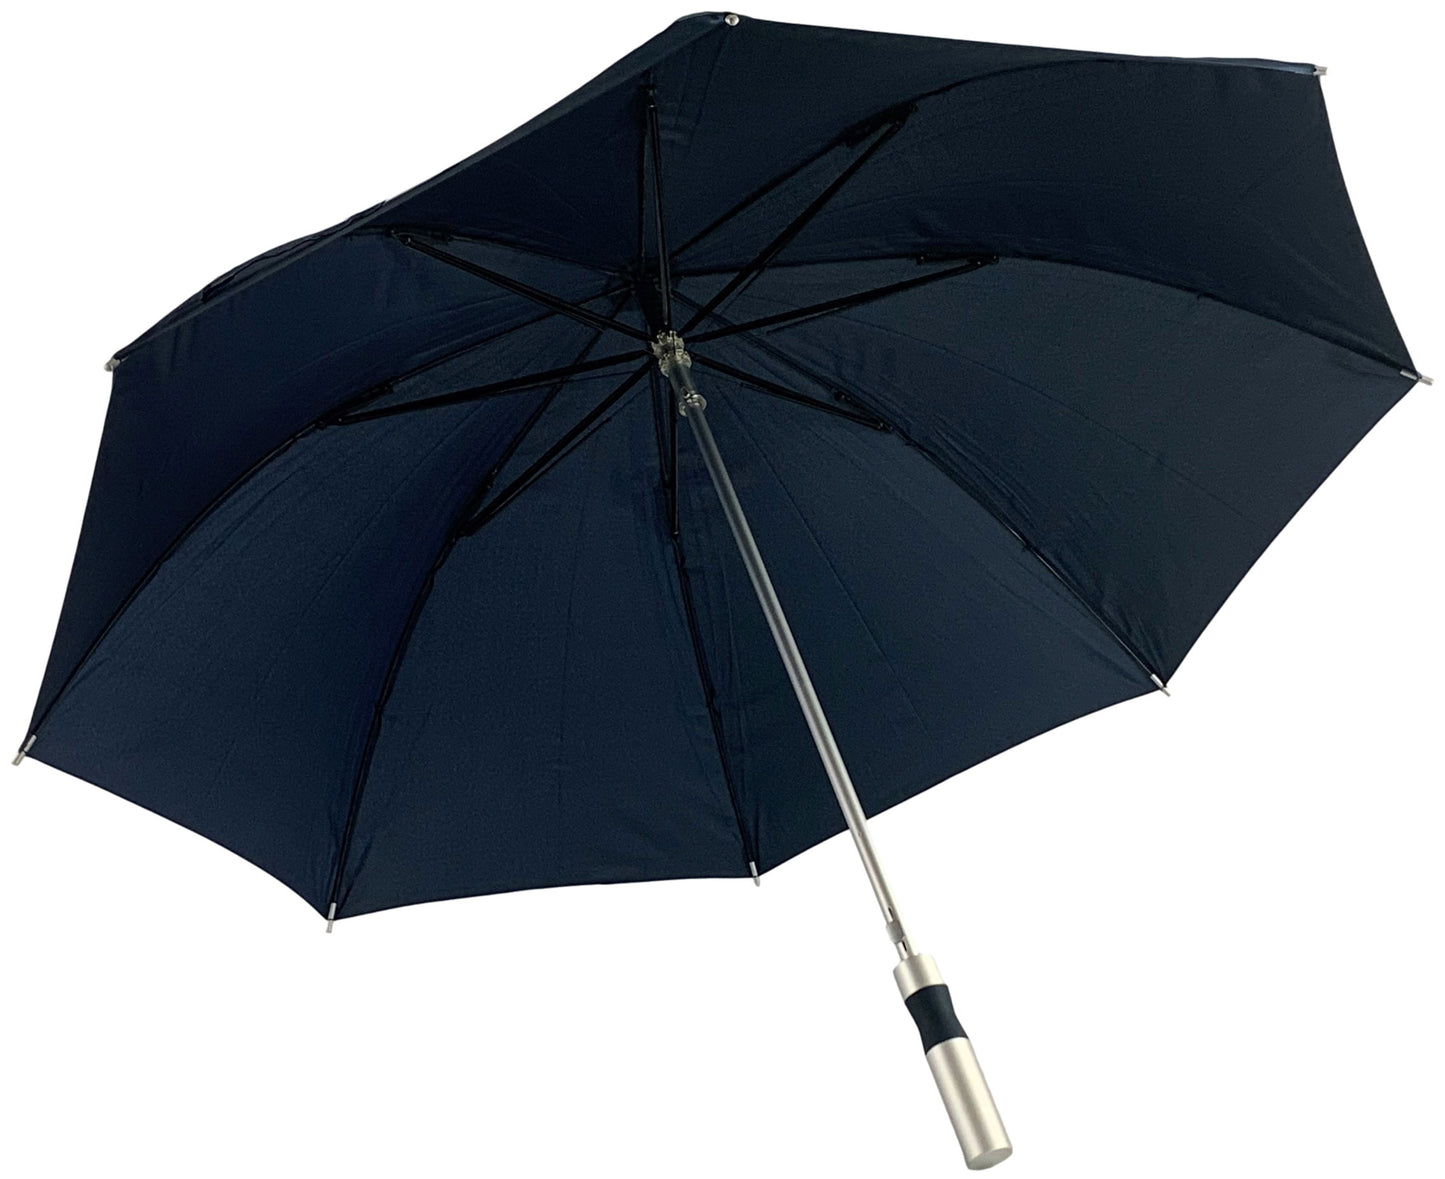 Μπλε μαρίν ομπρέλα βροχής, συνοδείας, μακριά, αυτόματη, αντιανεμική.